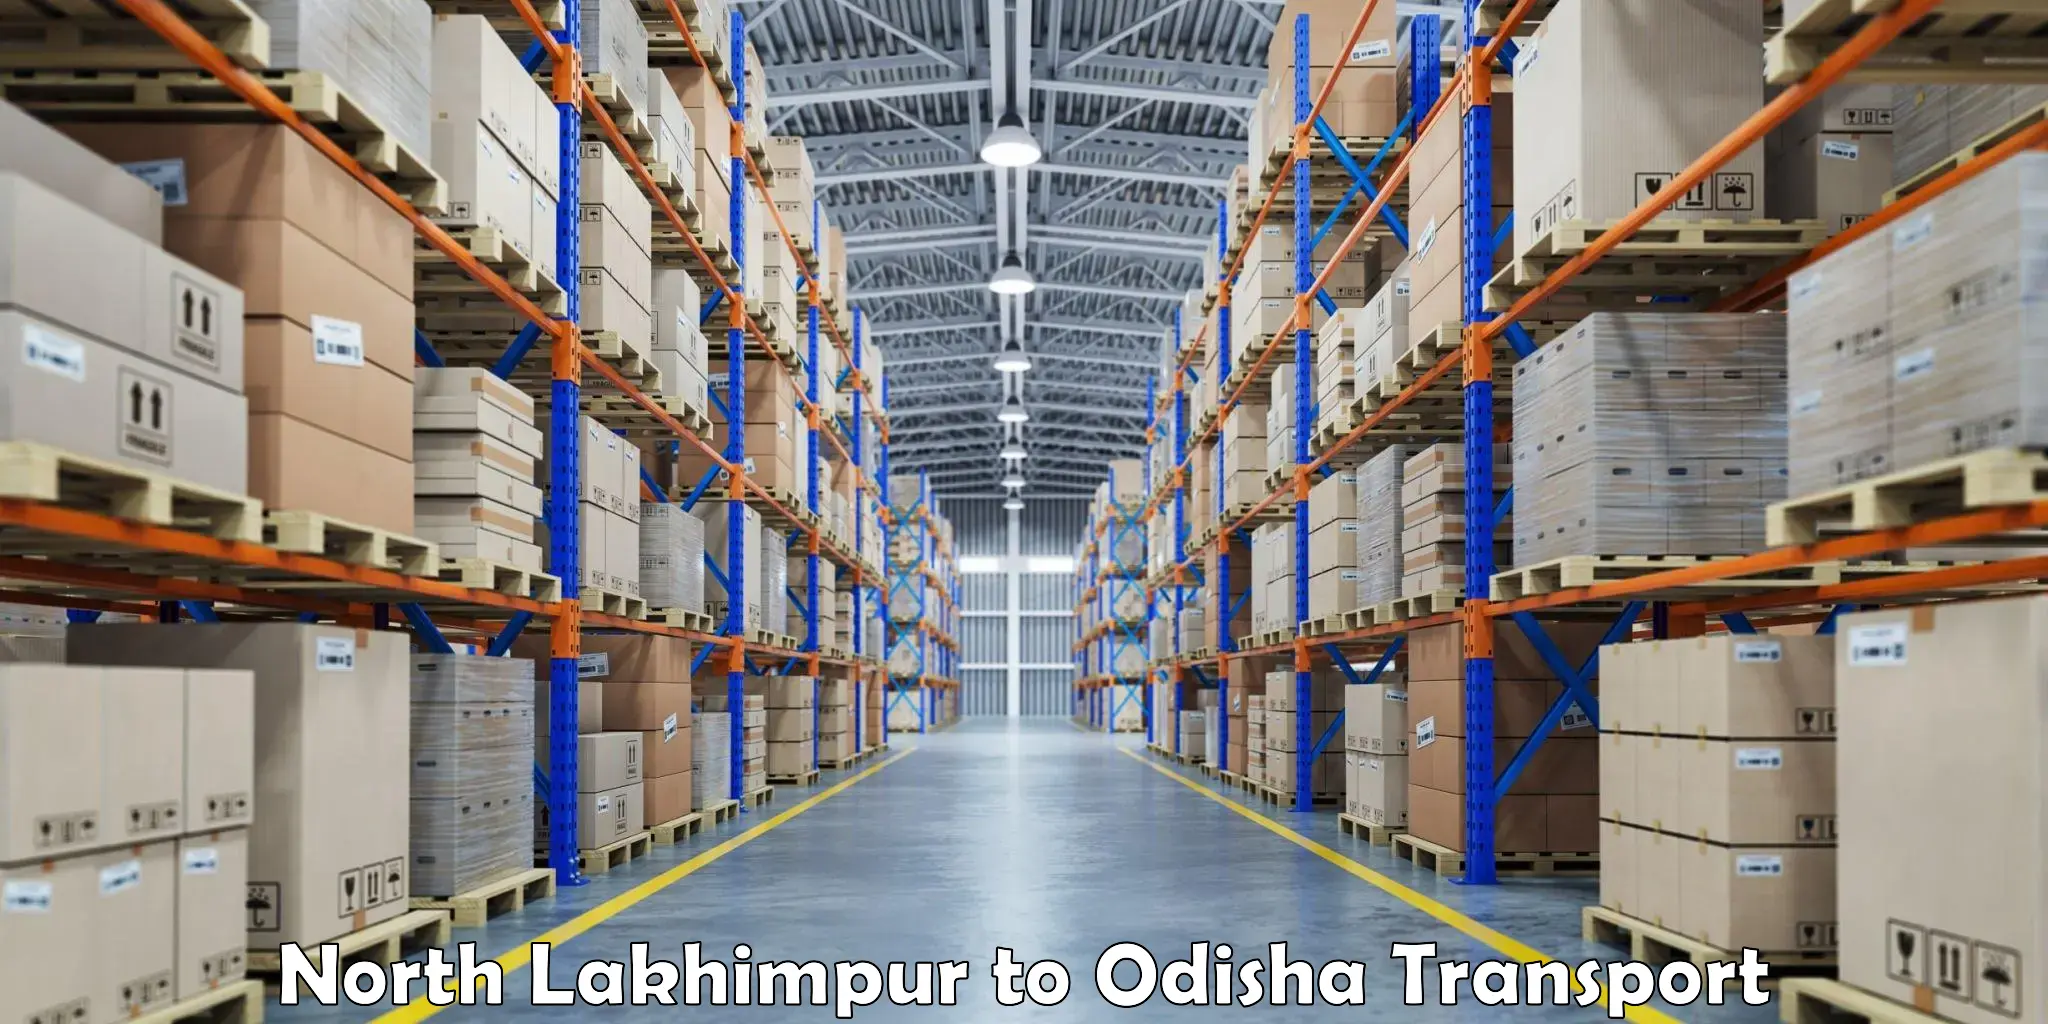 Express transport services North Lakhimpur to Tikiri